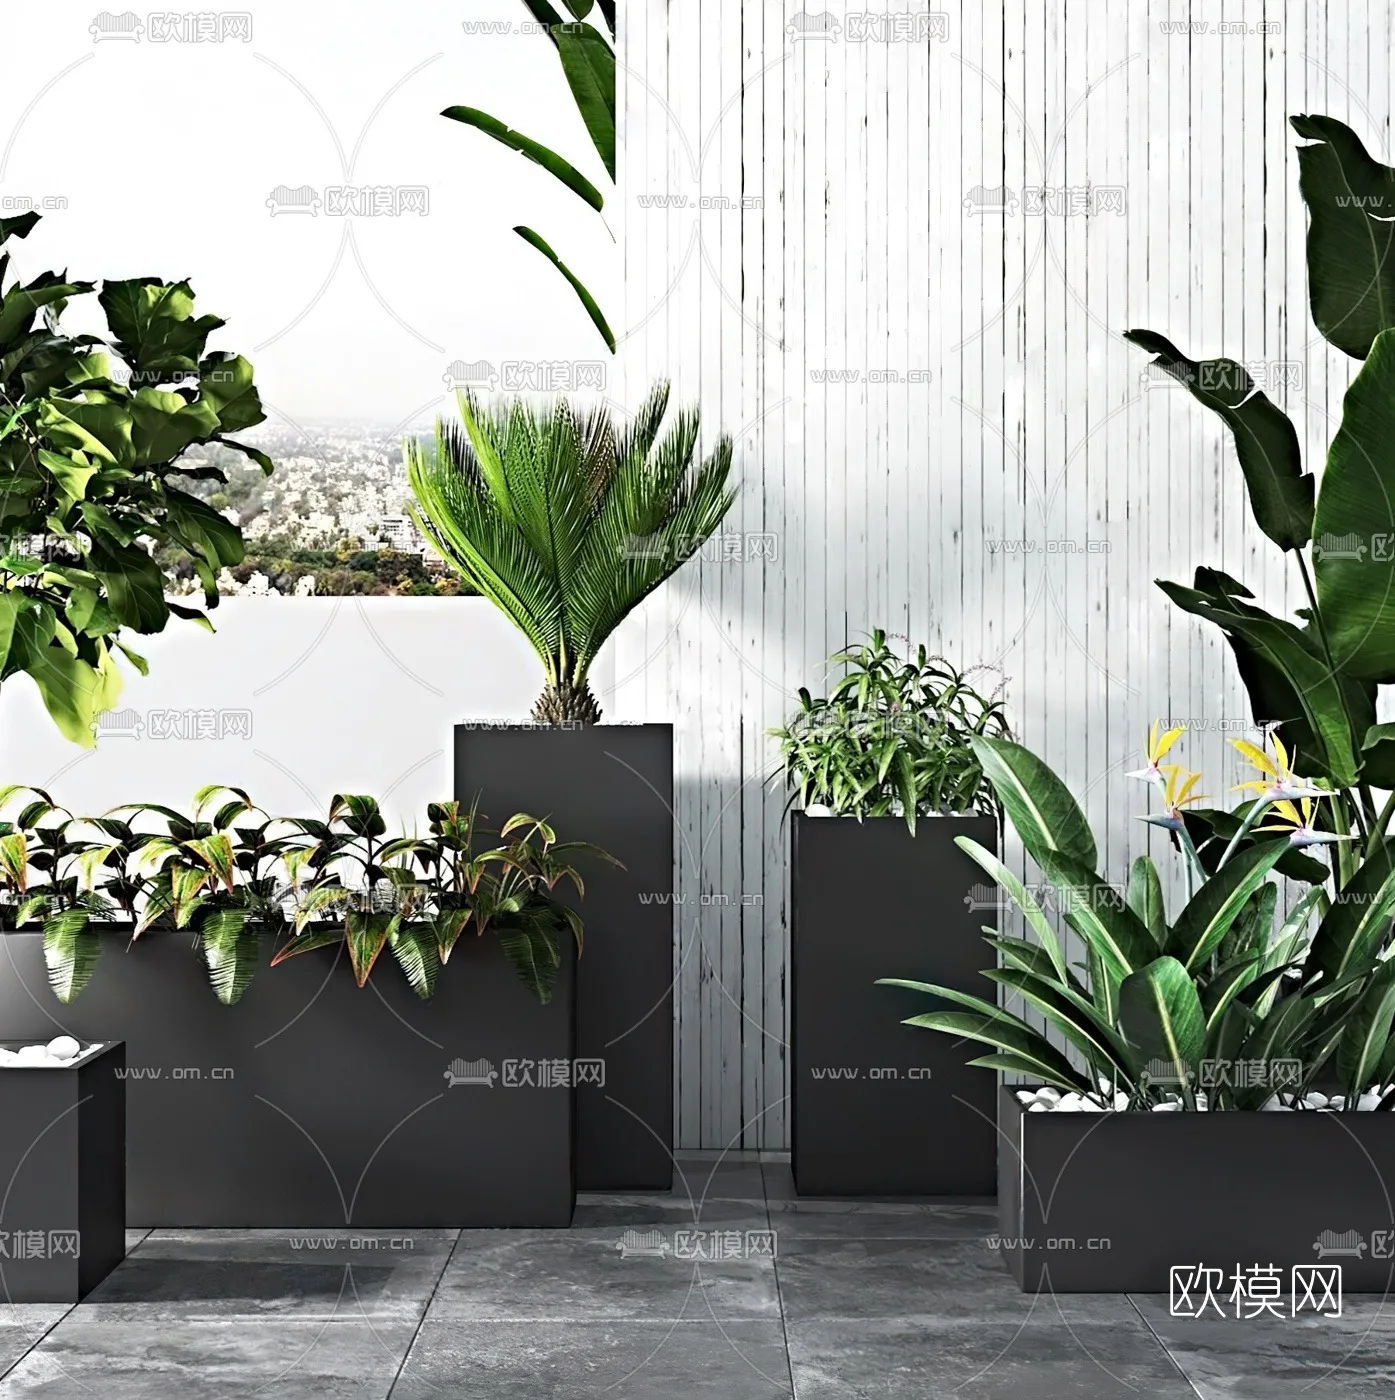 PLANT 3D MODELS – 023